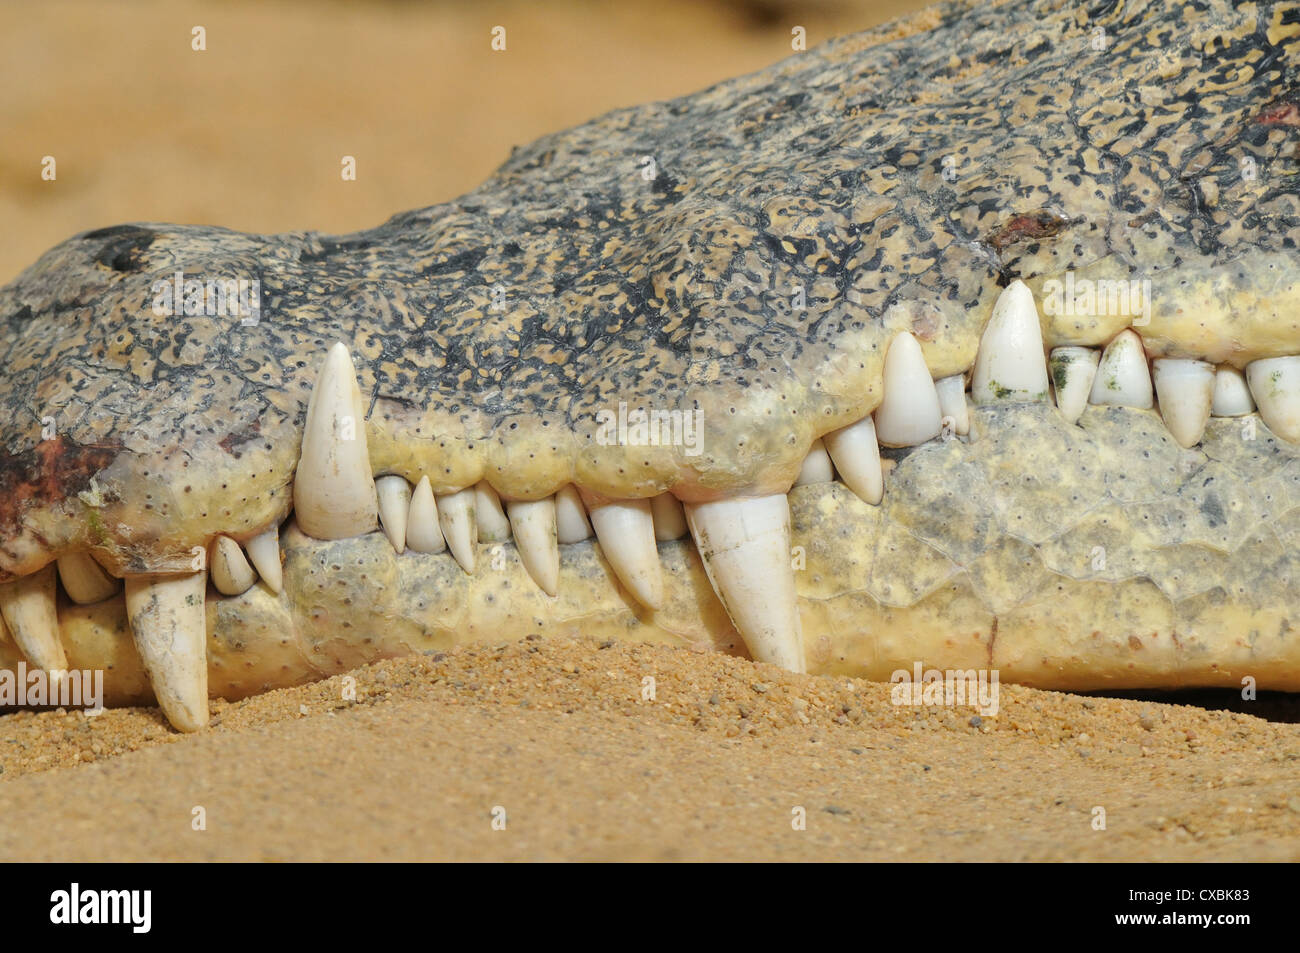 Los dientes del cocodrilo Foto de stock